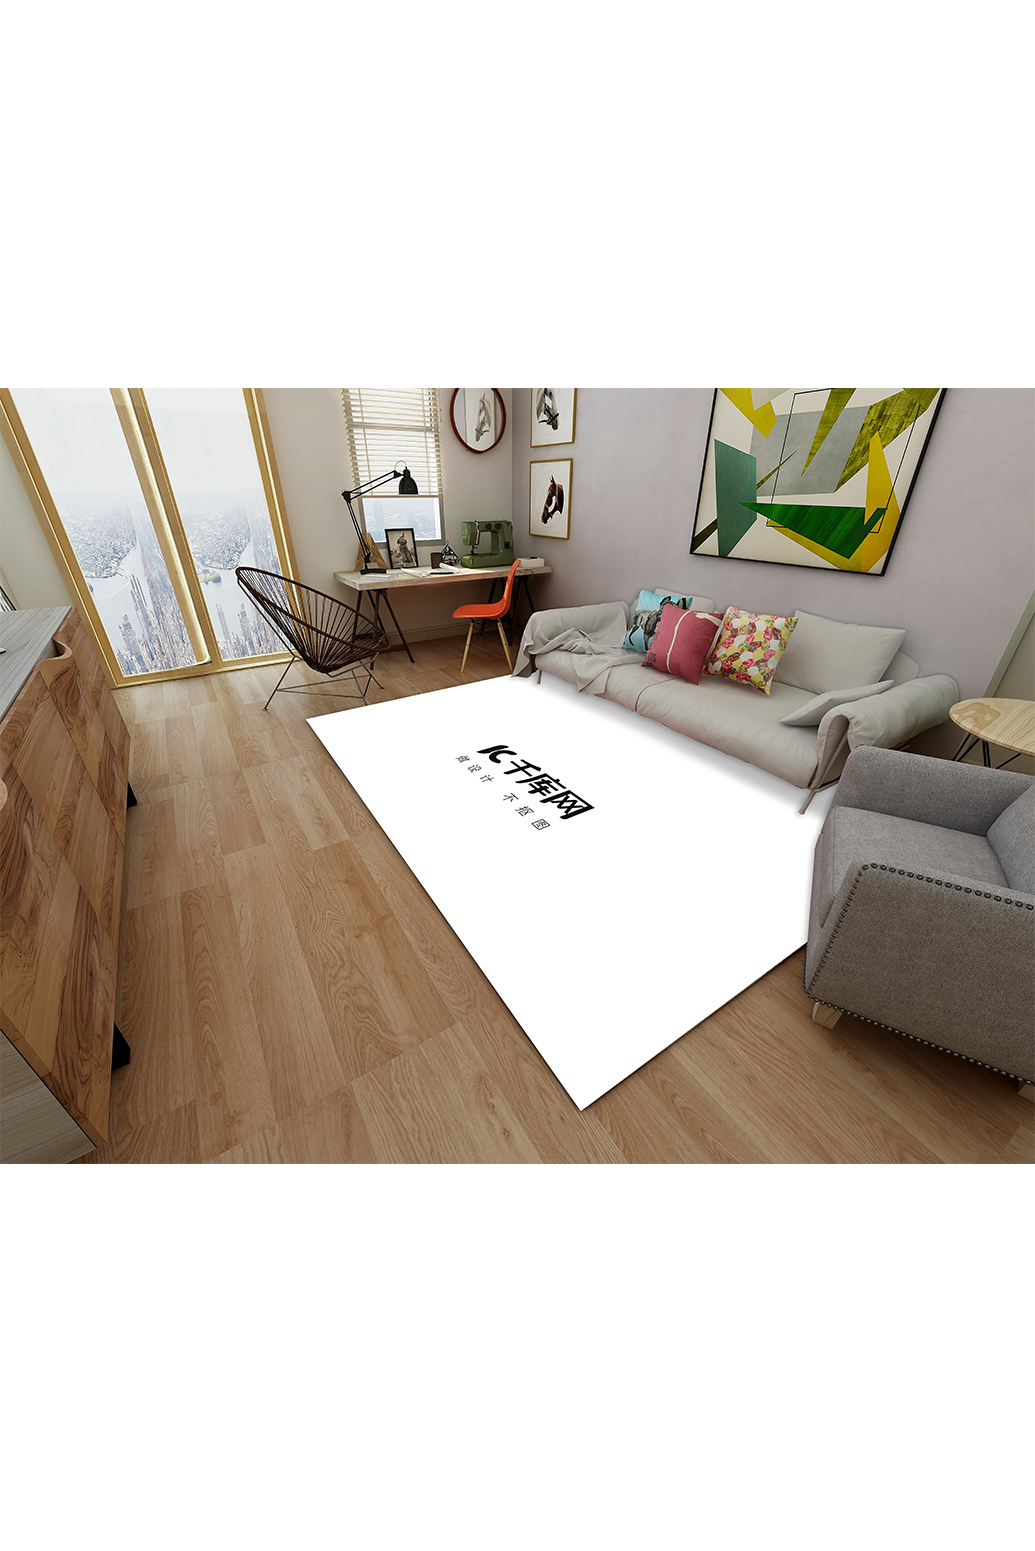 客厅内装饰展示模板地毯白色创意样机图片